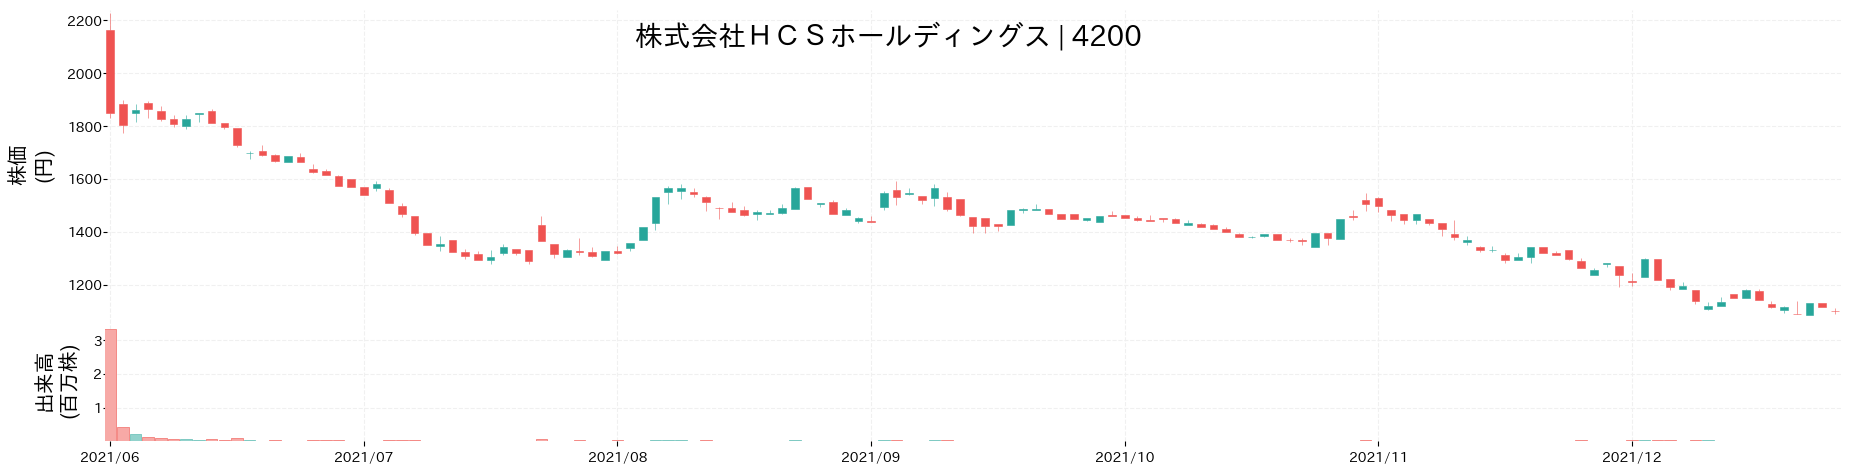 HCSホールディングスの株価推移(2021)